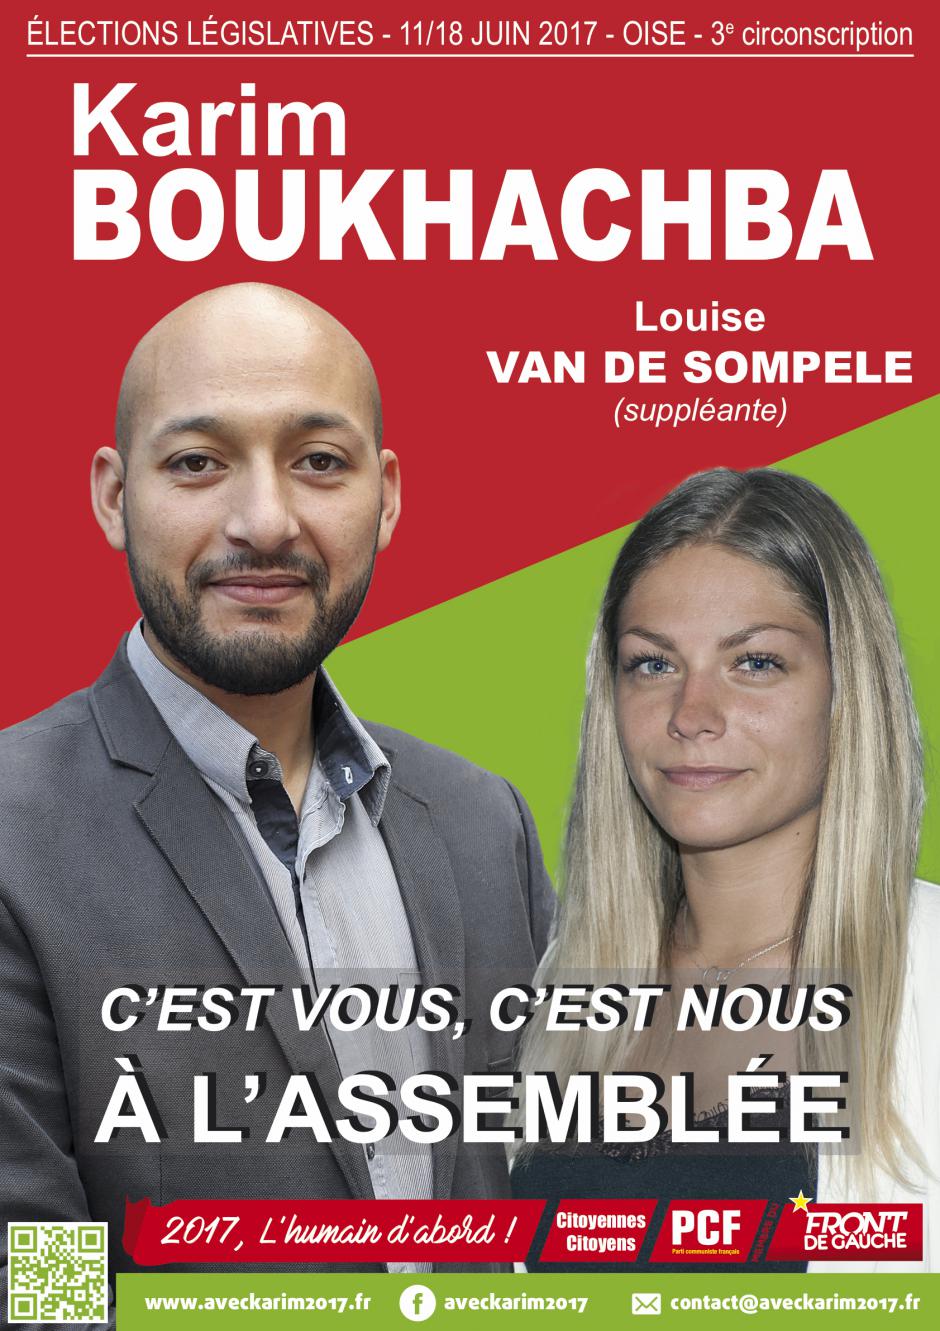 Affiche de campagne de Karim Boukhachba et Louise Van de Sompele au législatives 2017 - 3e circonscription de l'Oise, 22 mai 2017